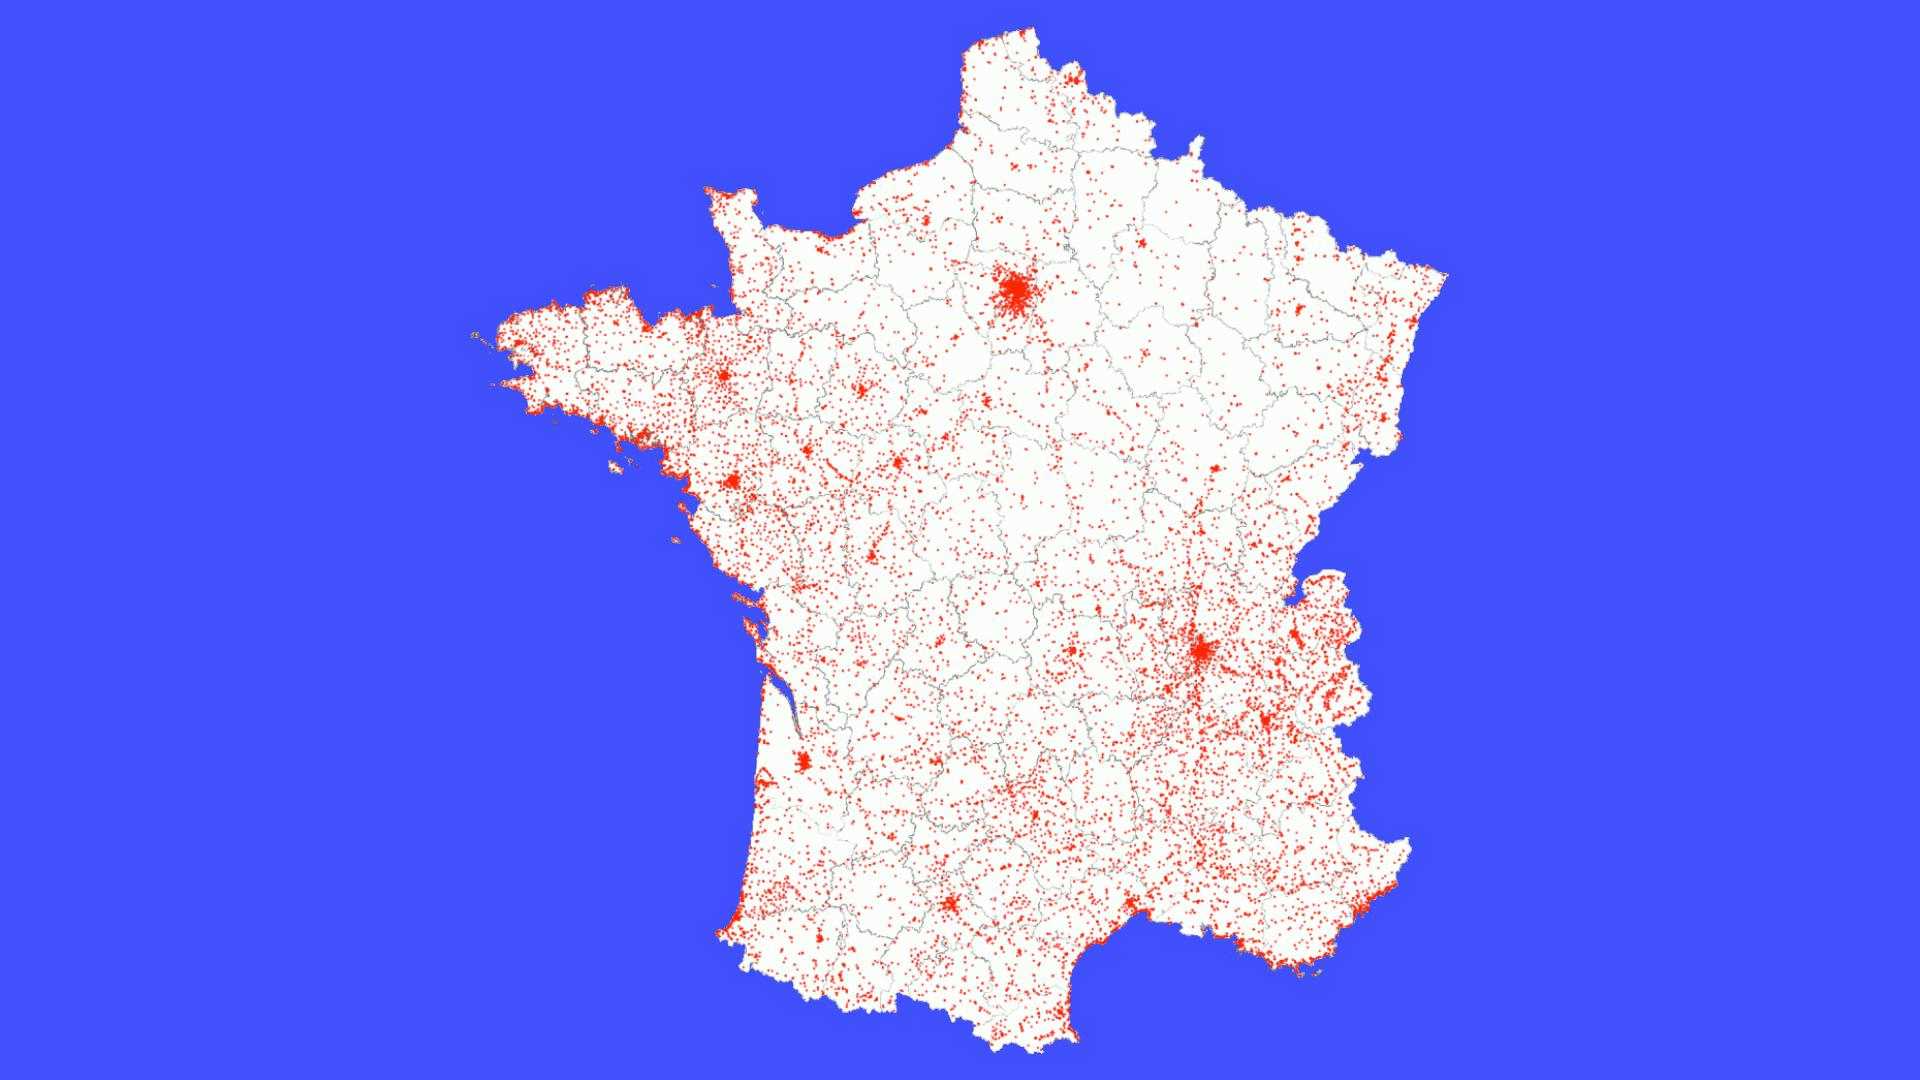 Toilettes publiques à Journée mondiale des toilettes : cartes de France, Paris, Marseille et Lyon — toilettespubliques.com